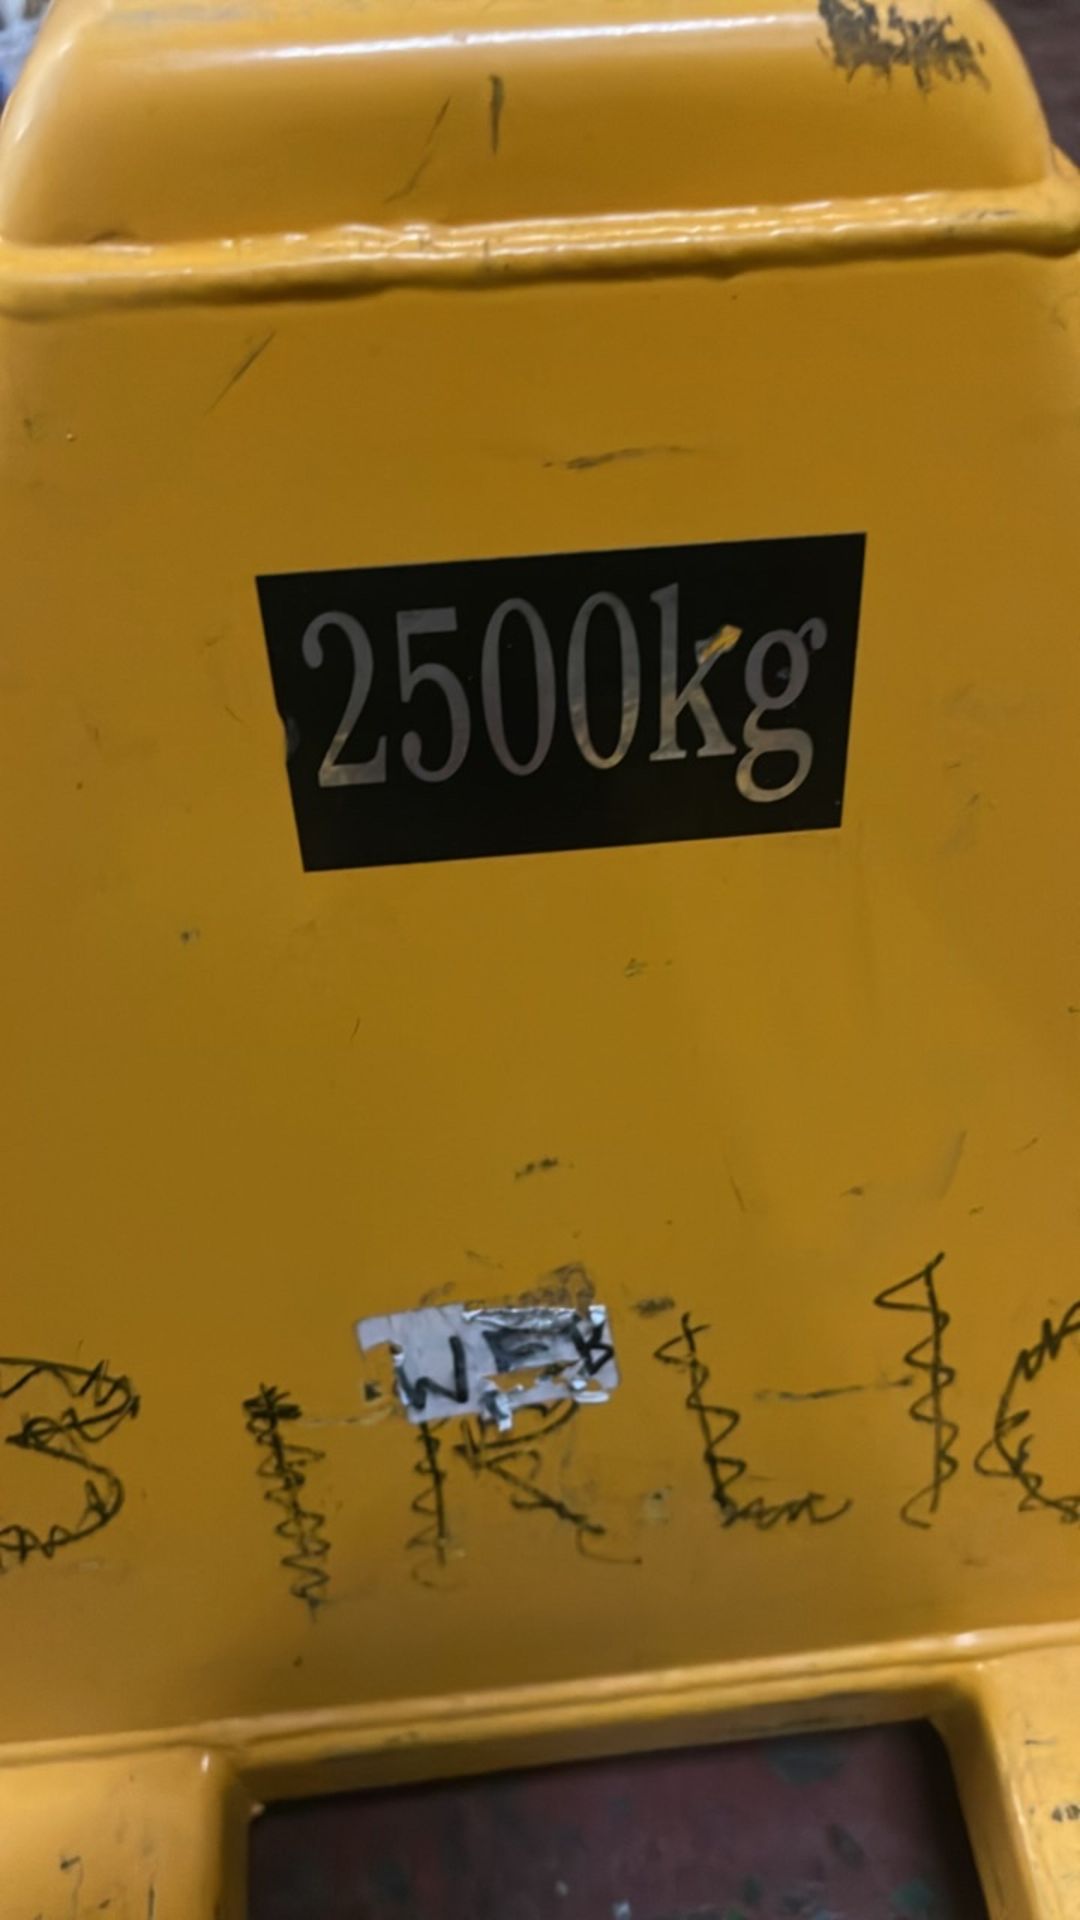 2500kg Pallet Truck - Image 2 of 5